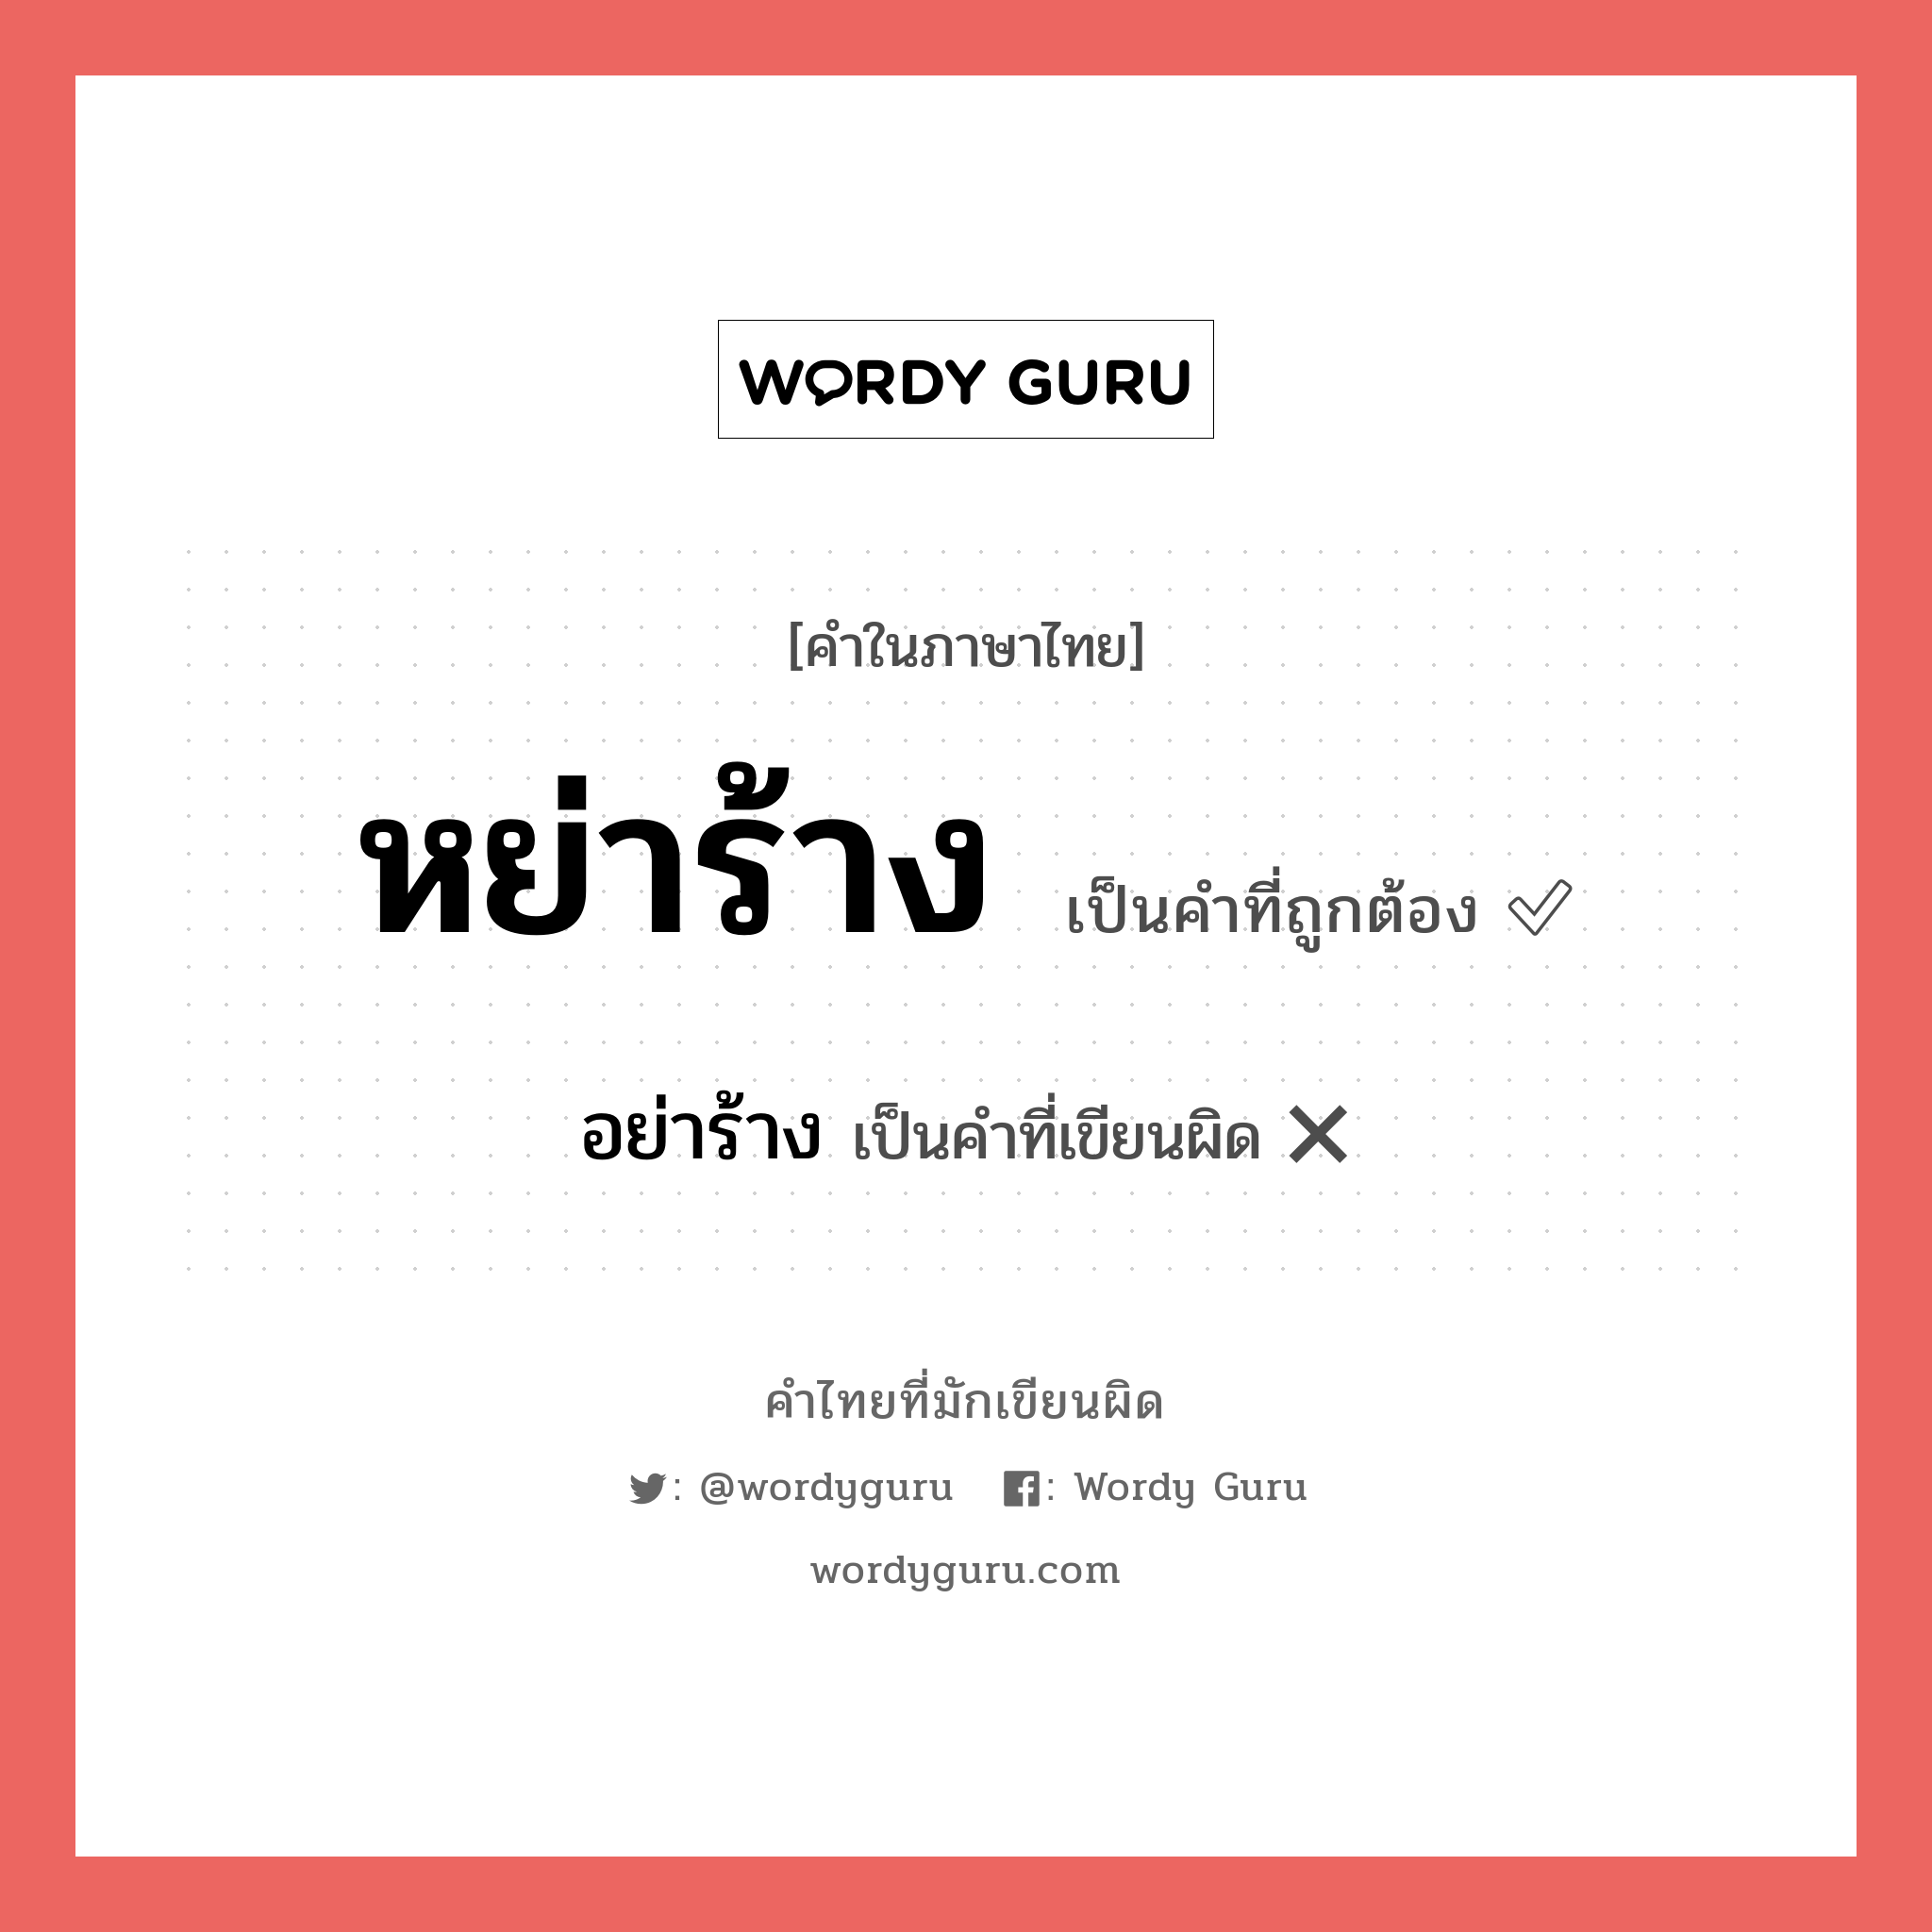 หย่าร้าง หรือ อย่าร้าง เขียนยังไง? คำไหนเขียนถูก?, คำในภาษาไทยที่มักเขียนผิด หย่าร้าง คำที่ผิด ❌ อย่าร้าง